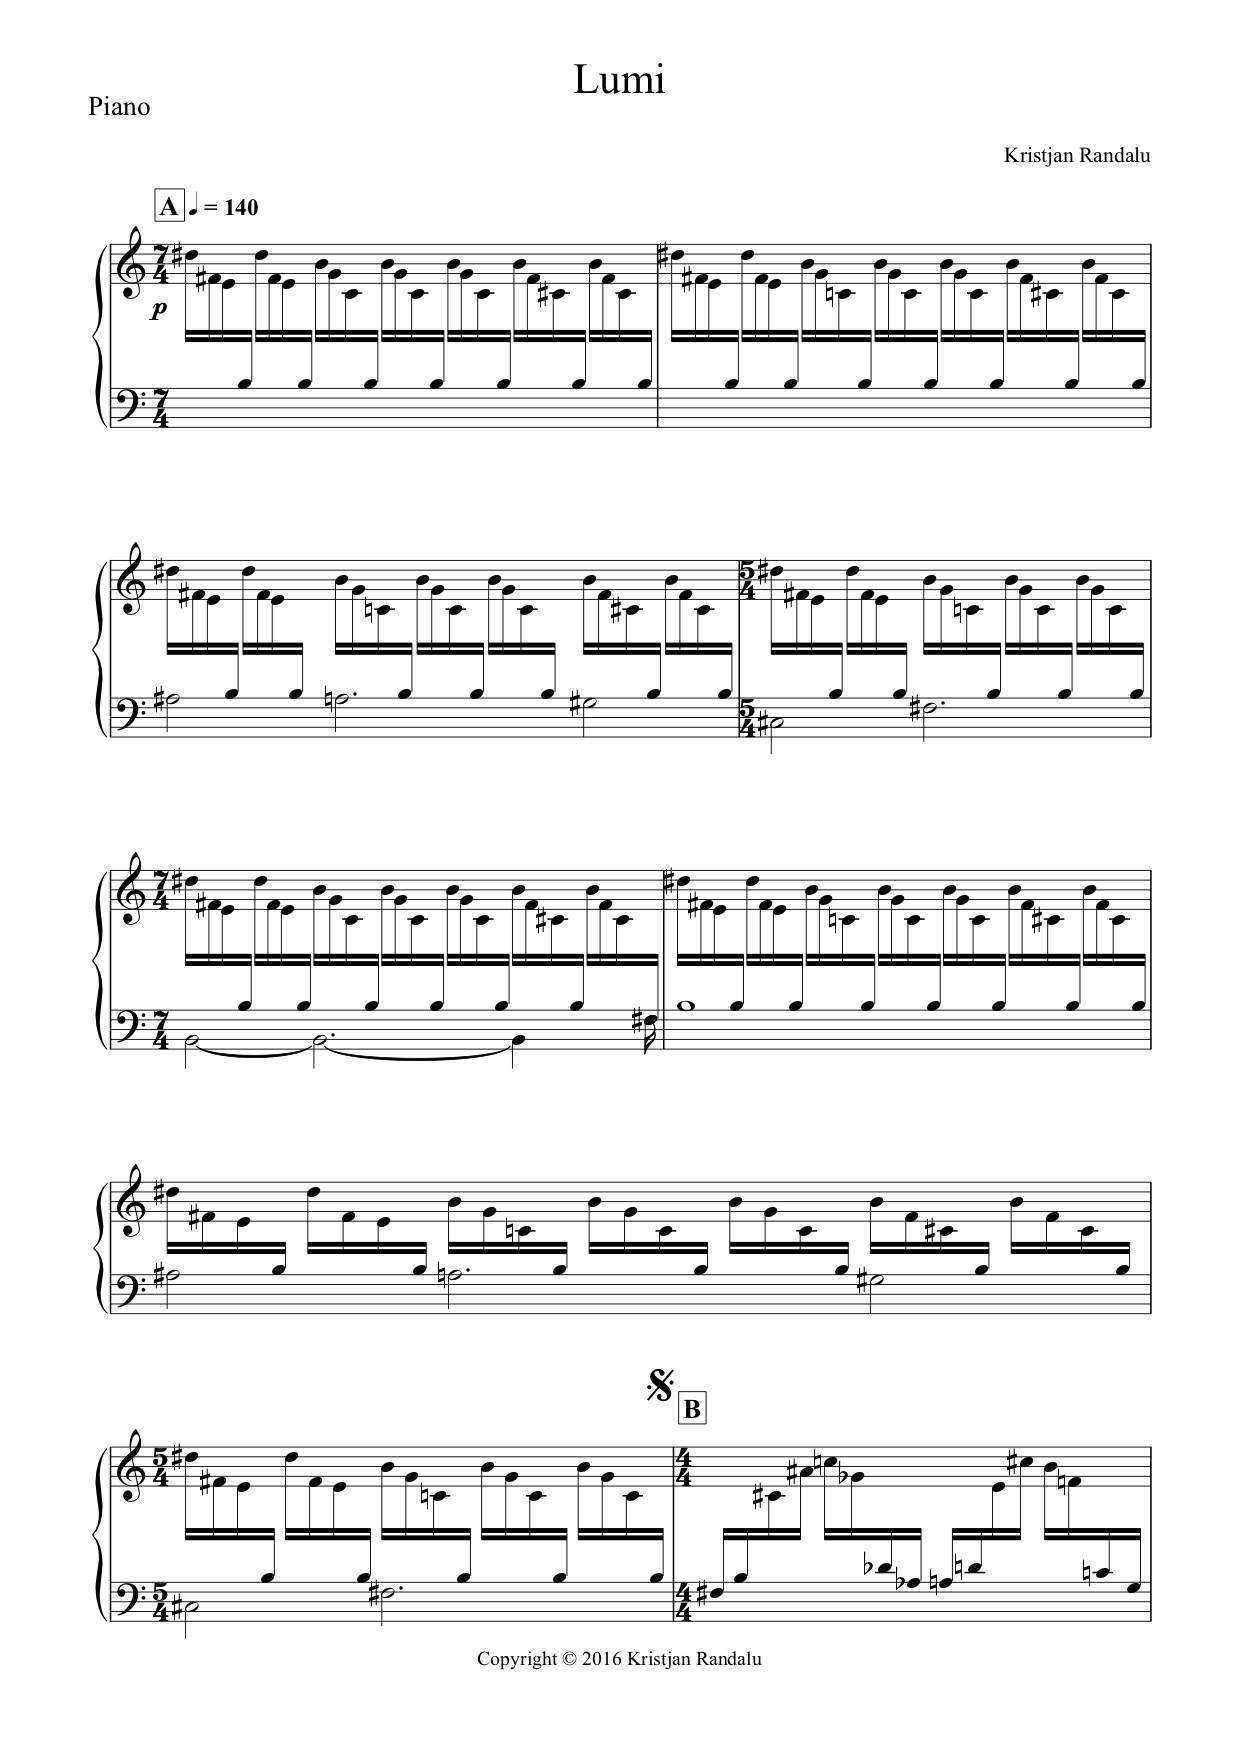 "Lumi" Piano Score